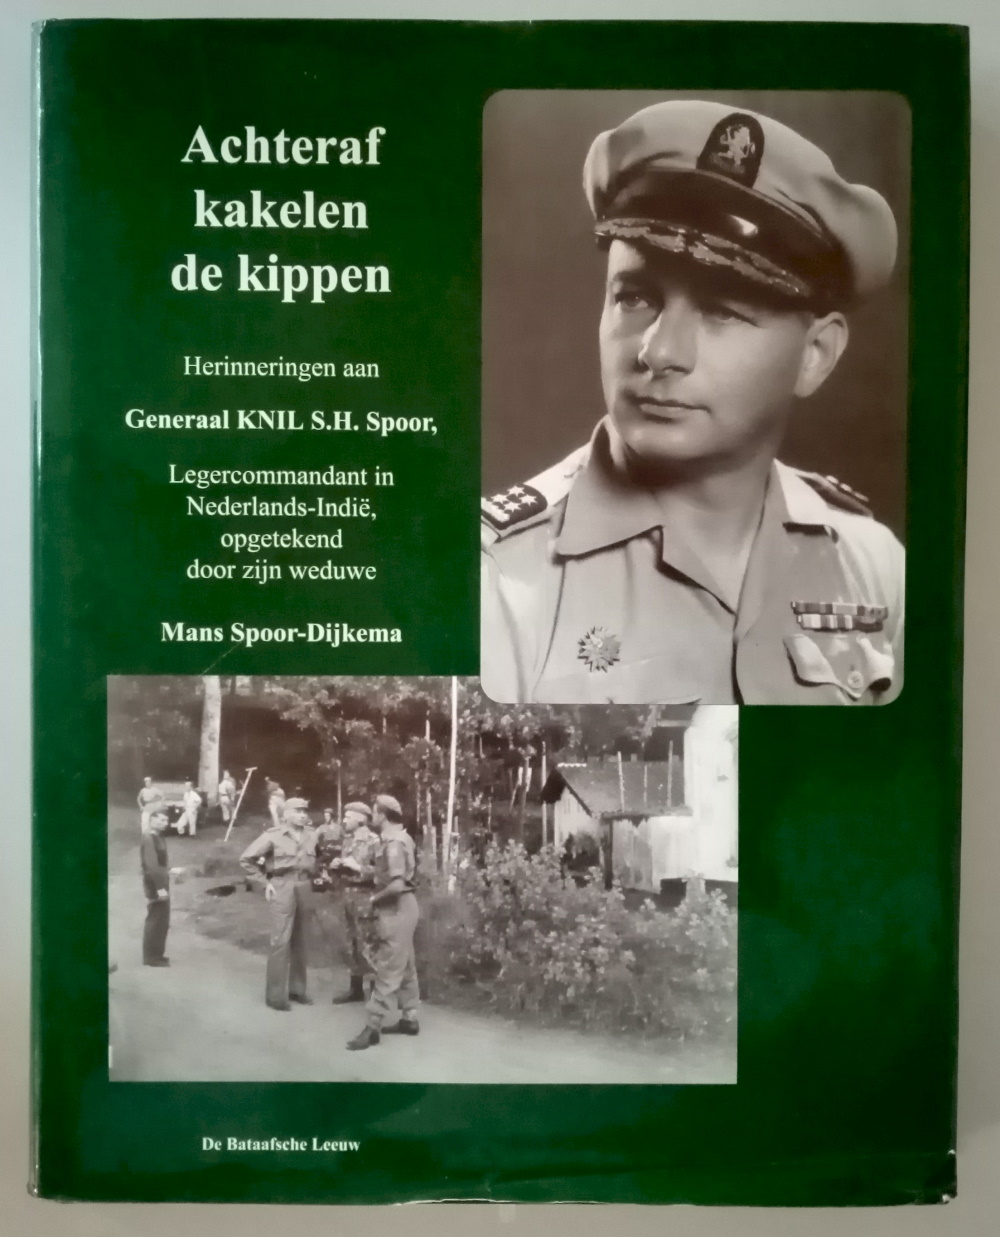 Dijkema-Spoor, Mans - Achteraf kakelen de kippen. Herinneringen aan Generaal KNIL S.H. Spoor, Legecommandant in Nederlads-Indi 30 januari 1946-25 mei 1949, opgetekend door zijn weduwe.